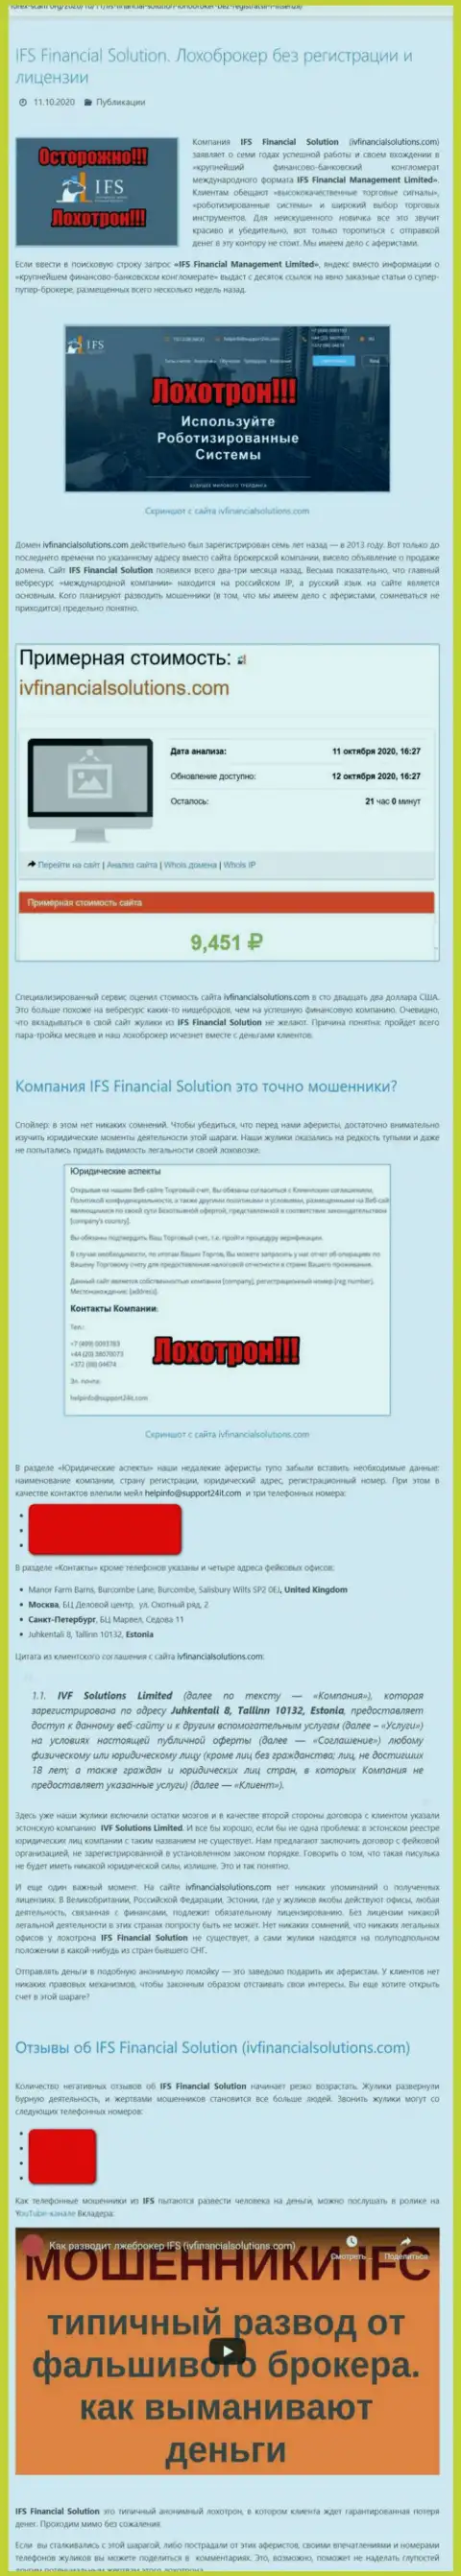 МОШЕННИКИ ! SCAM !!! Обзорная статья о мошеннических уловках в конторе ИВФ Солюшинс Лтд